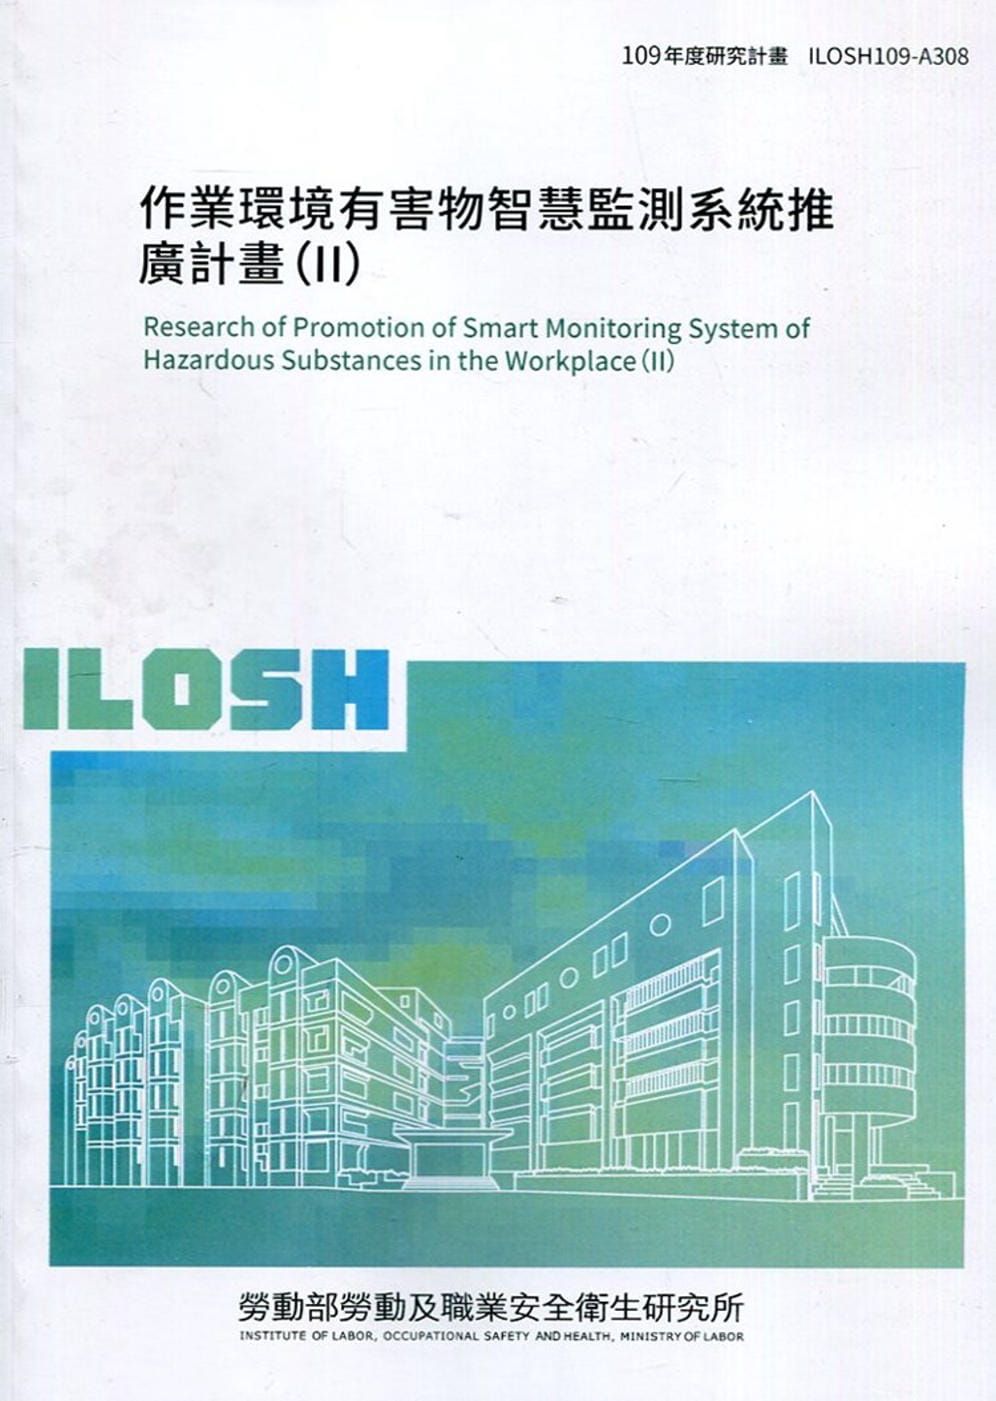 作業環境有害物智慧監測系統推廣計畫（II）ILOSH109-A308